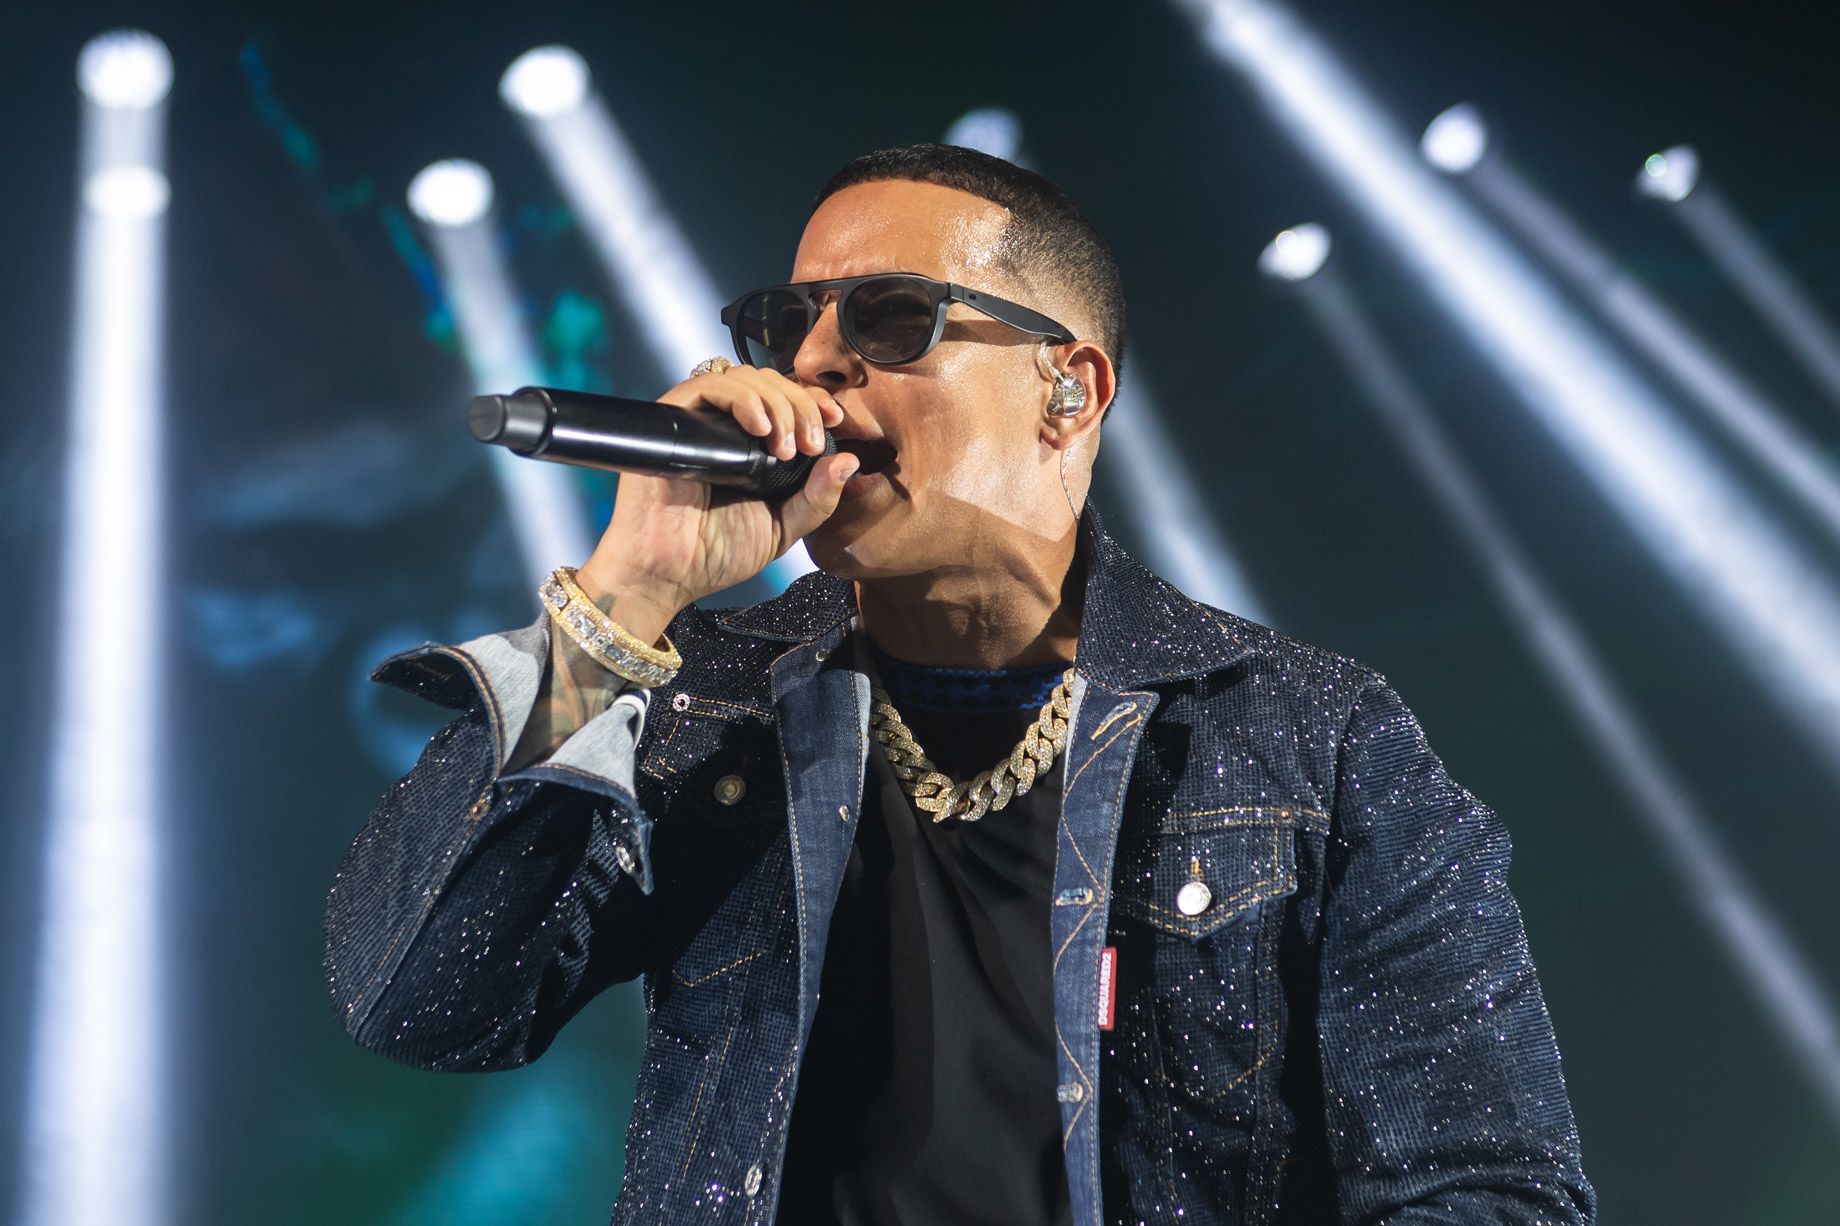 Muere a sus 46 años, el cantante y compositor Daddy Yankee.